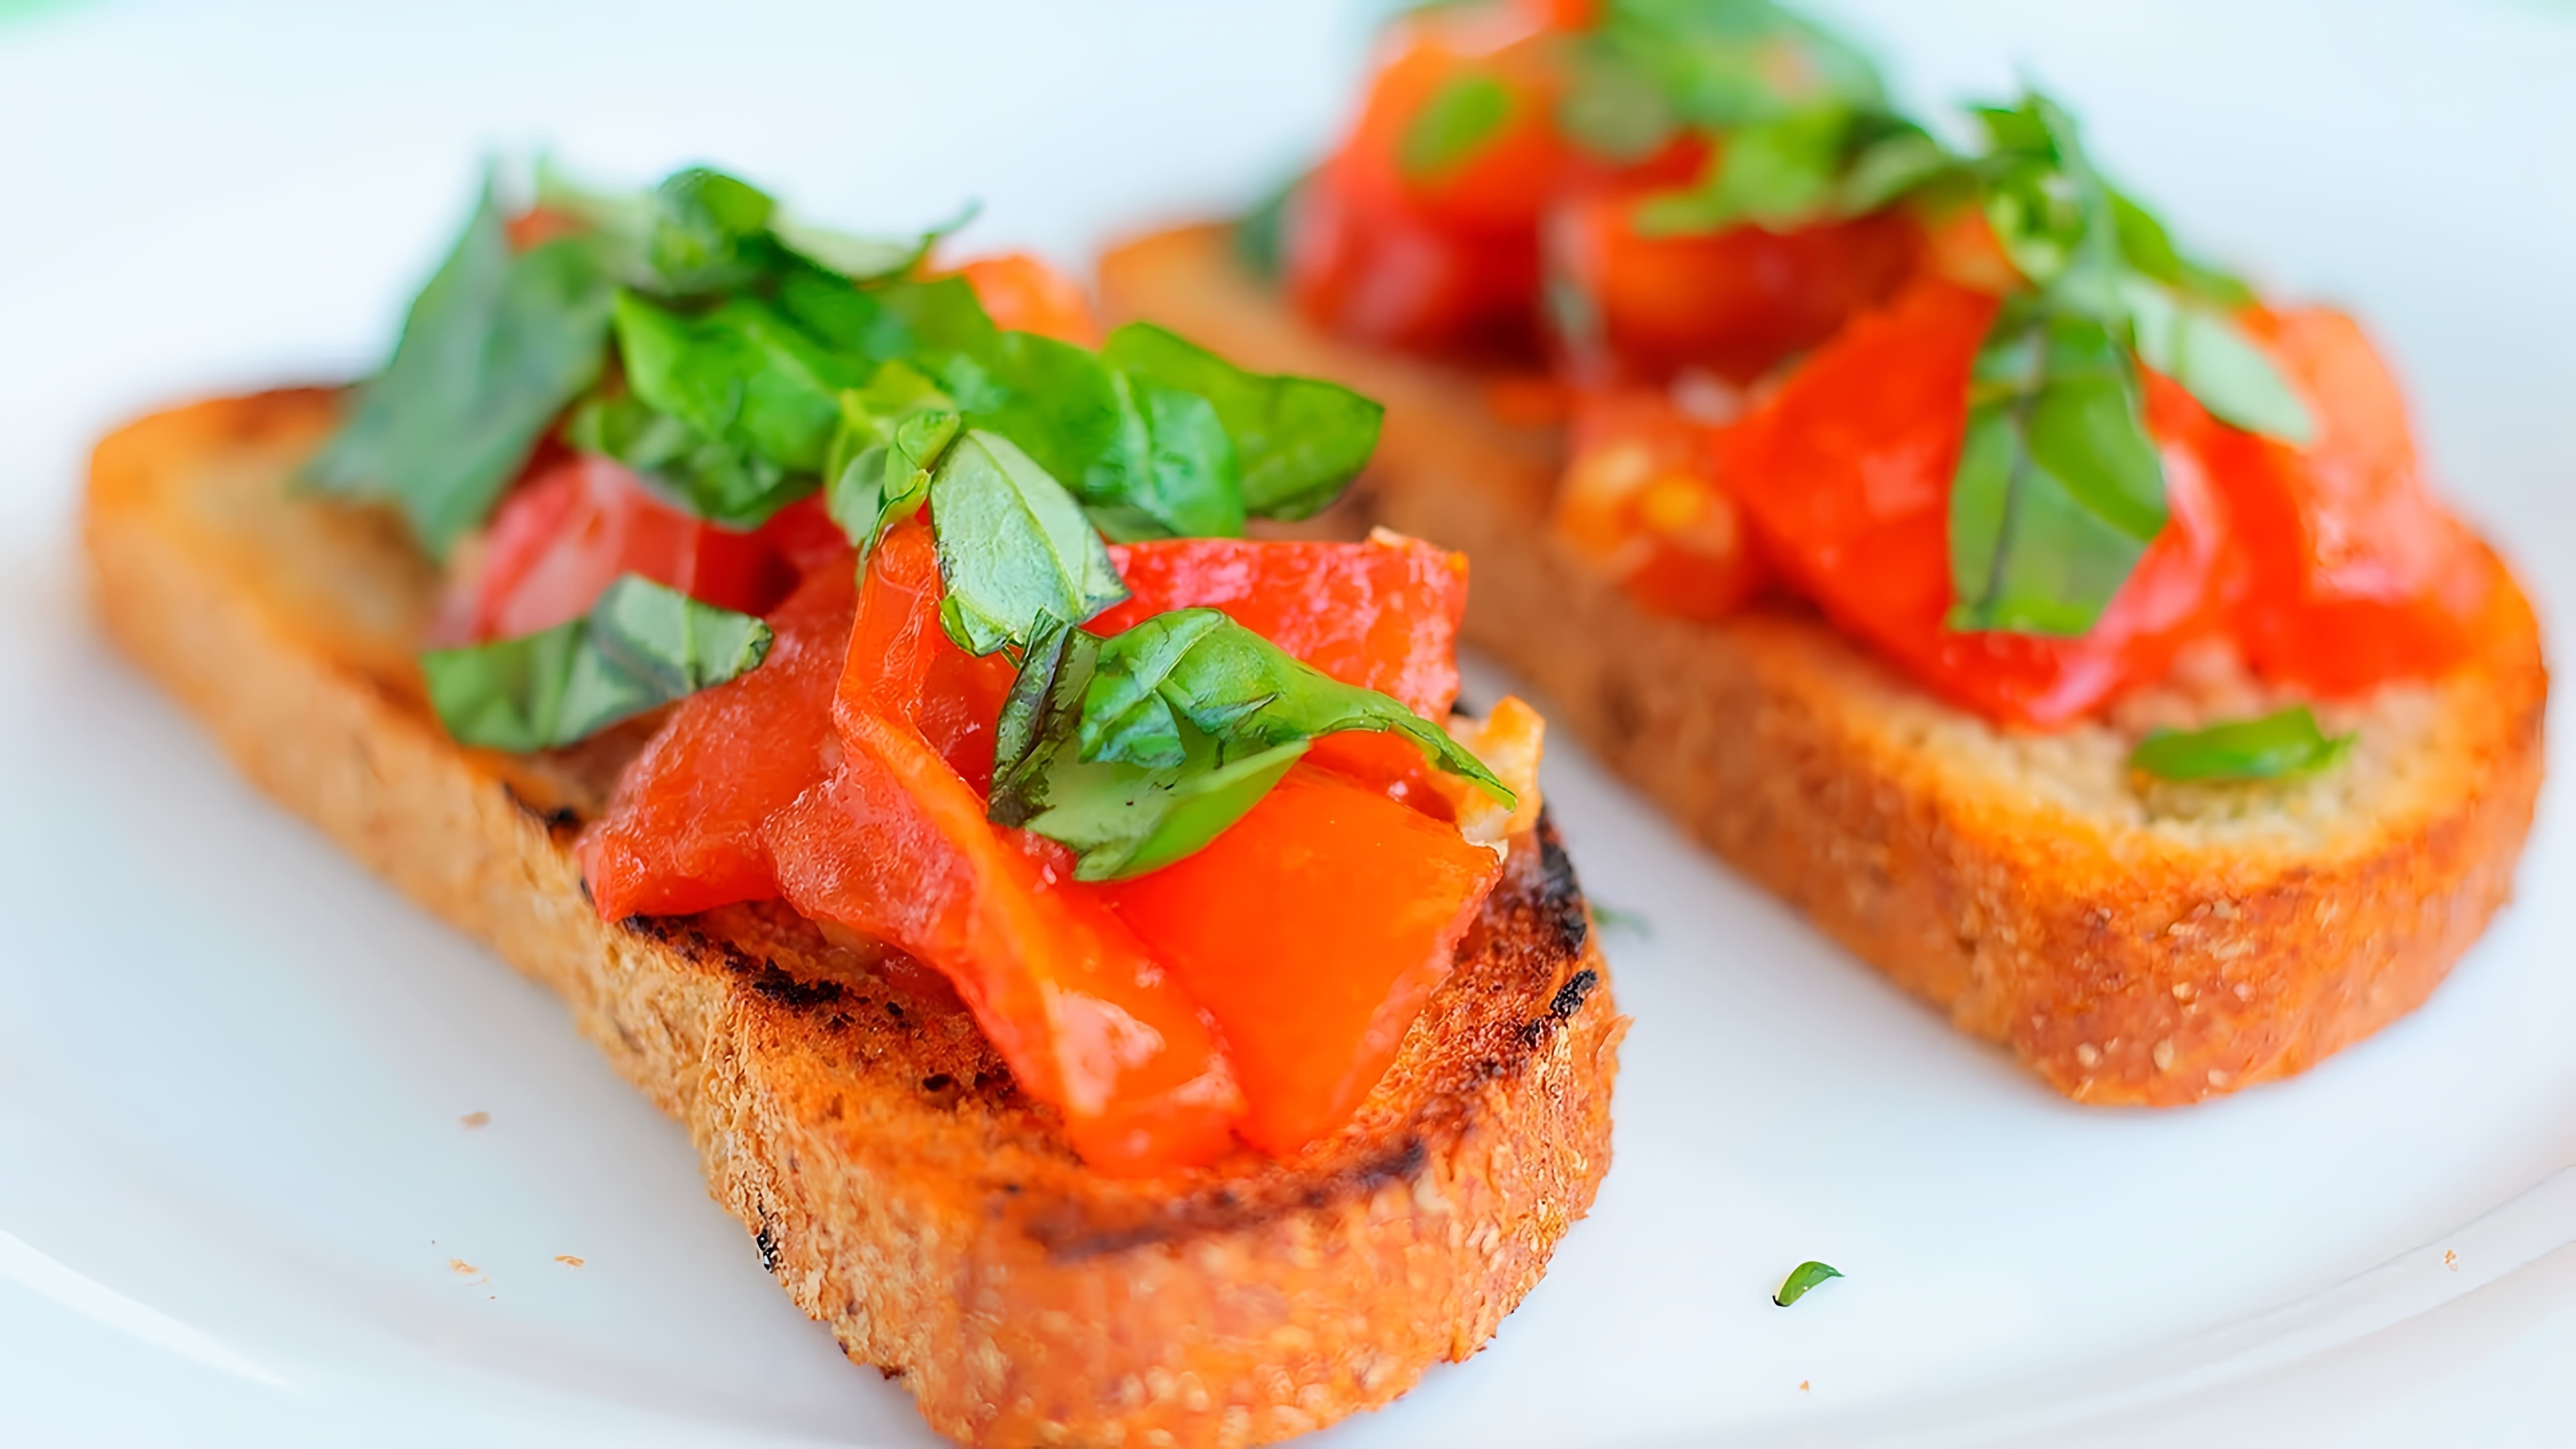 В этом видео демонстрируется рецепт приготовления брускетты с помидорами и базиликом